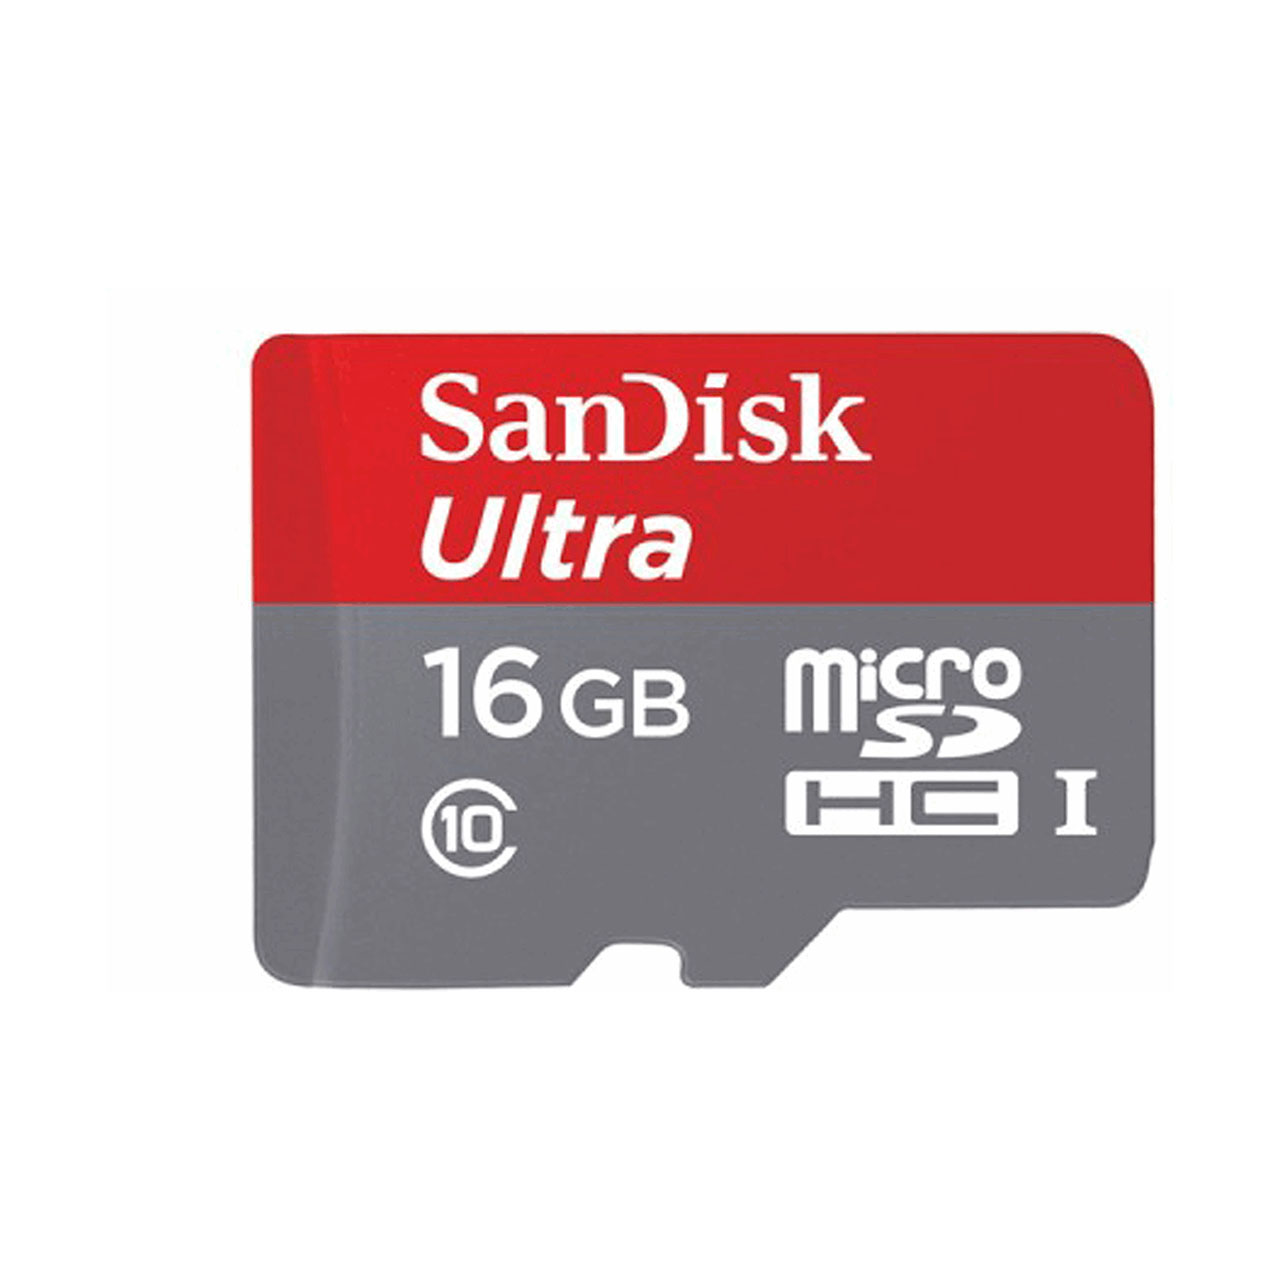 کارت حافظه MicroSDHC سن دیسک مدل Ultraکلاس 10 استاندارد UHS-I U1 سرعت 80MBps 533X همراه با آداپتور SD ظرفیت 16 گیگابایت